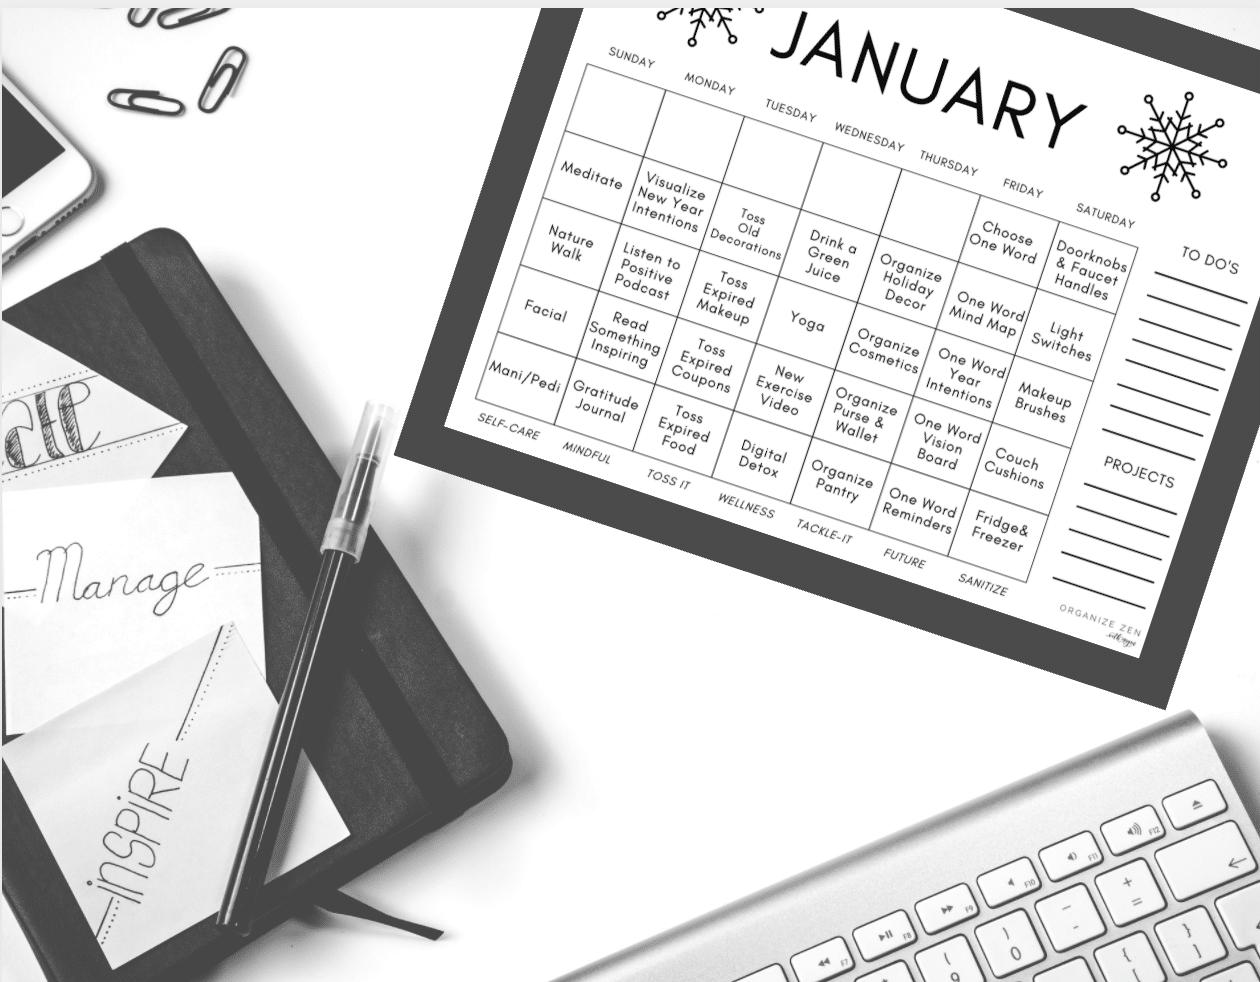 January calendar with themed days